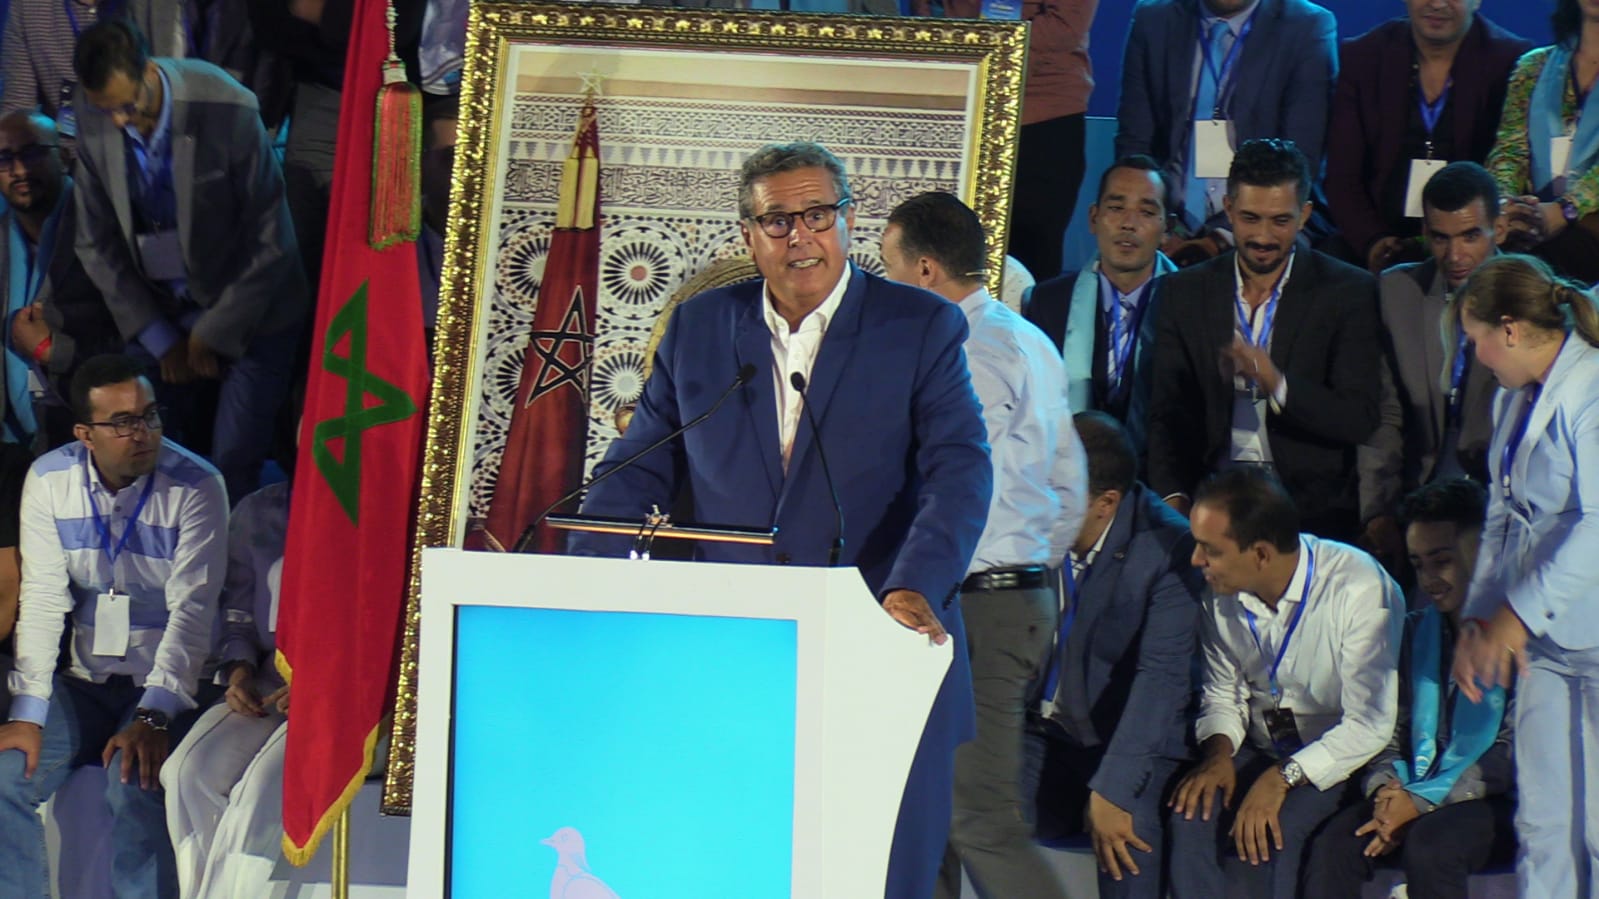 رئيس الحكومة المغربية: إستقبال سعيّد لزعيم البوليساريو سقطة